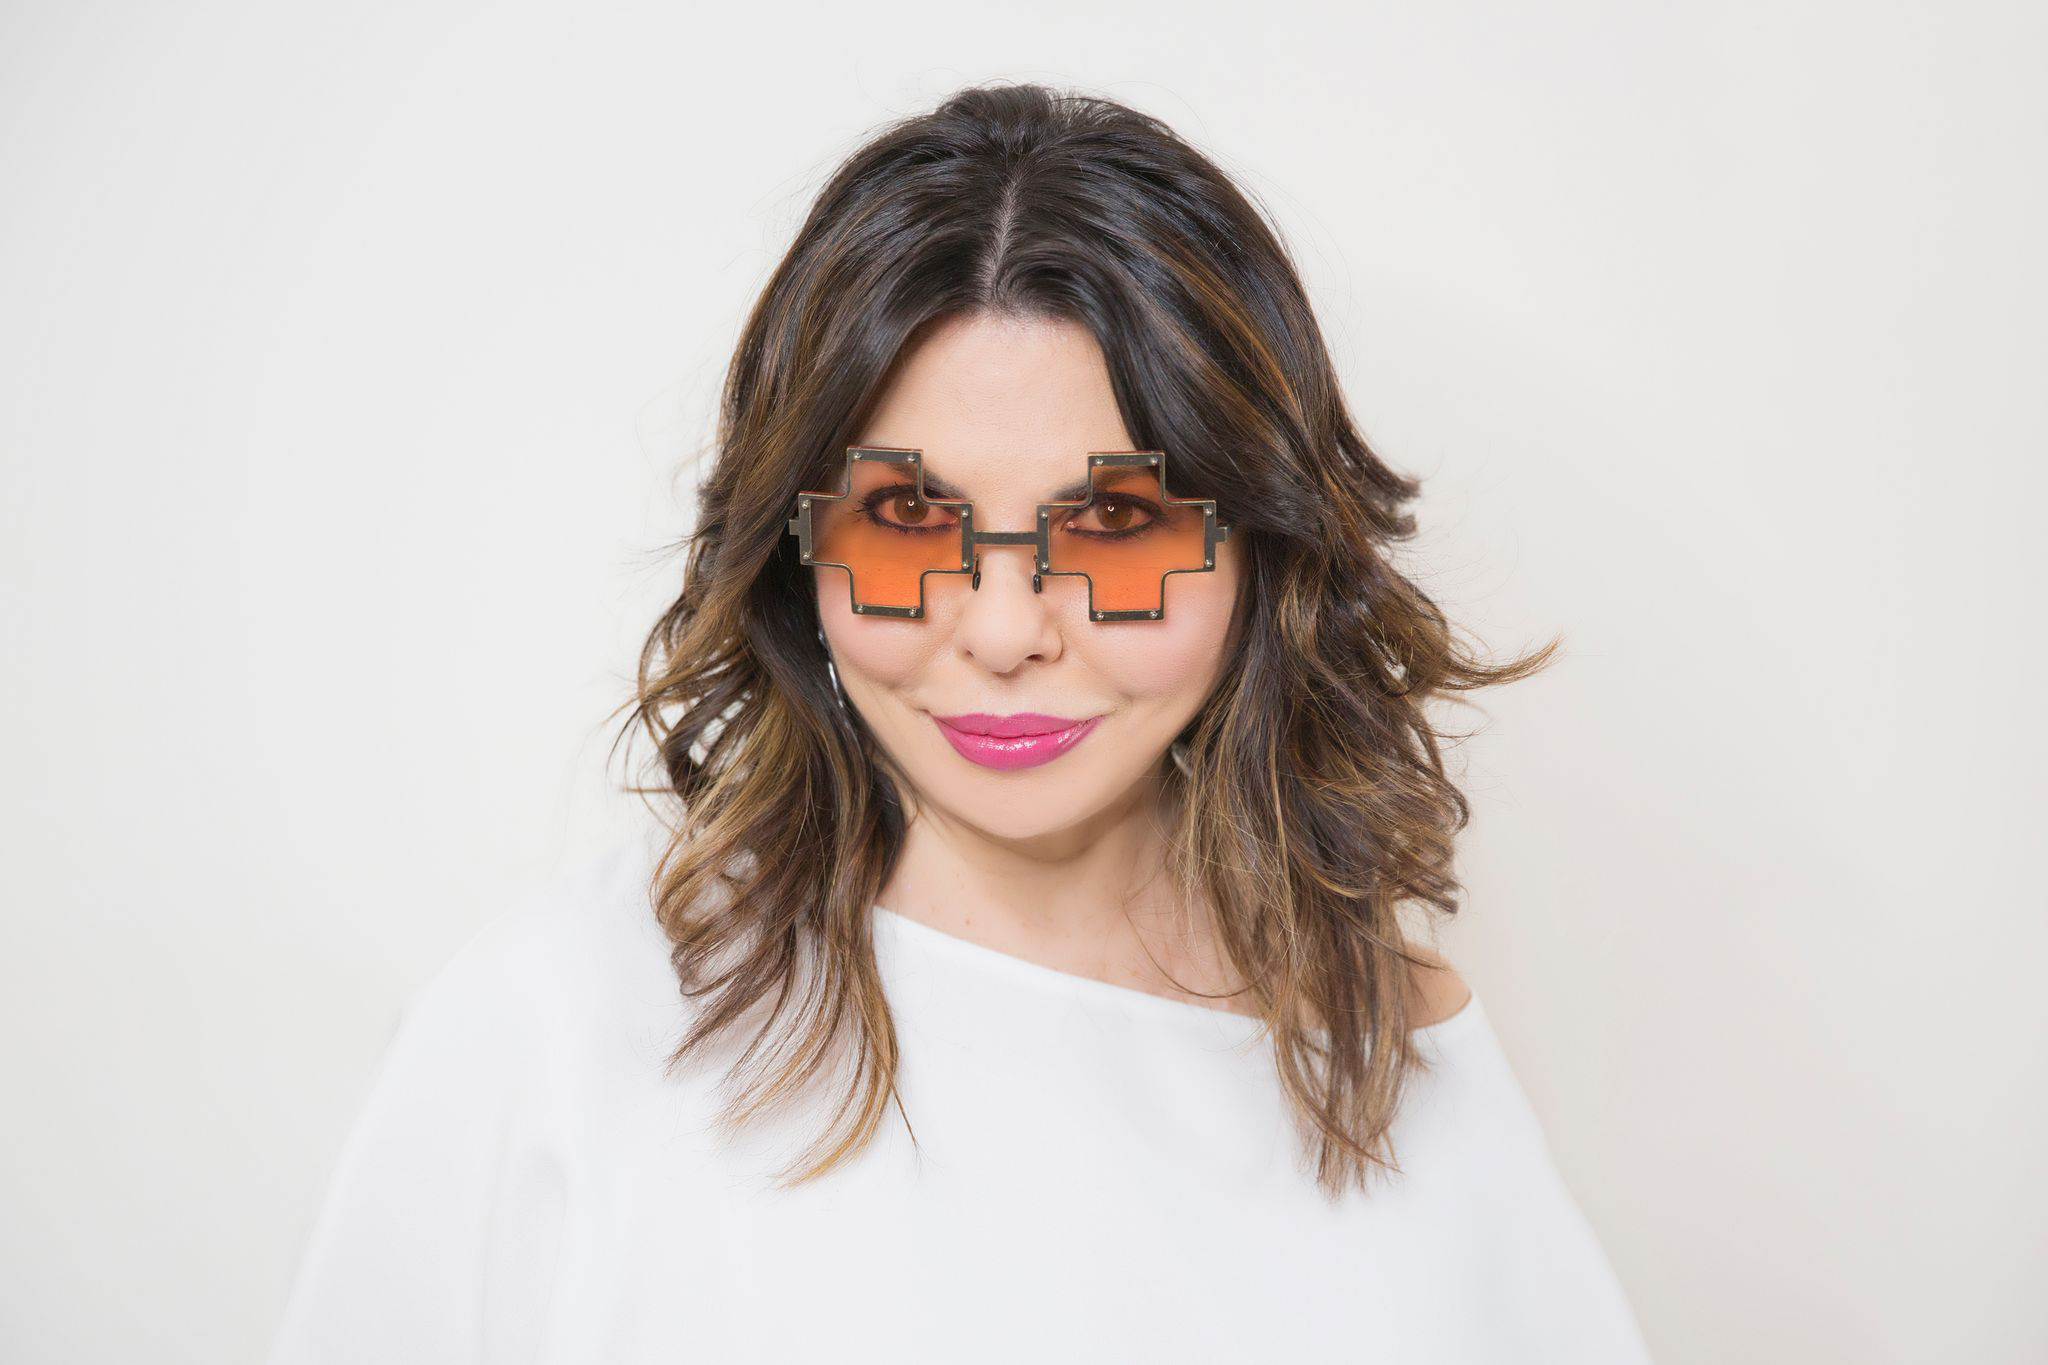 Angelica Pagnelli ti consiglia come abbinare le forme di occhiali a forma del viso e stile personale